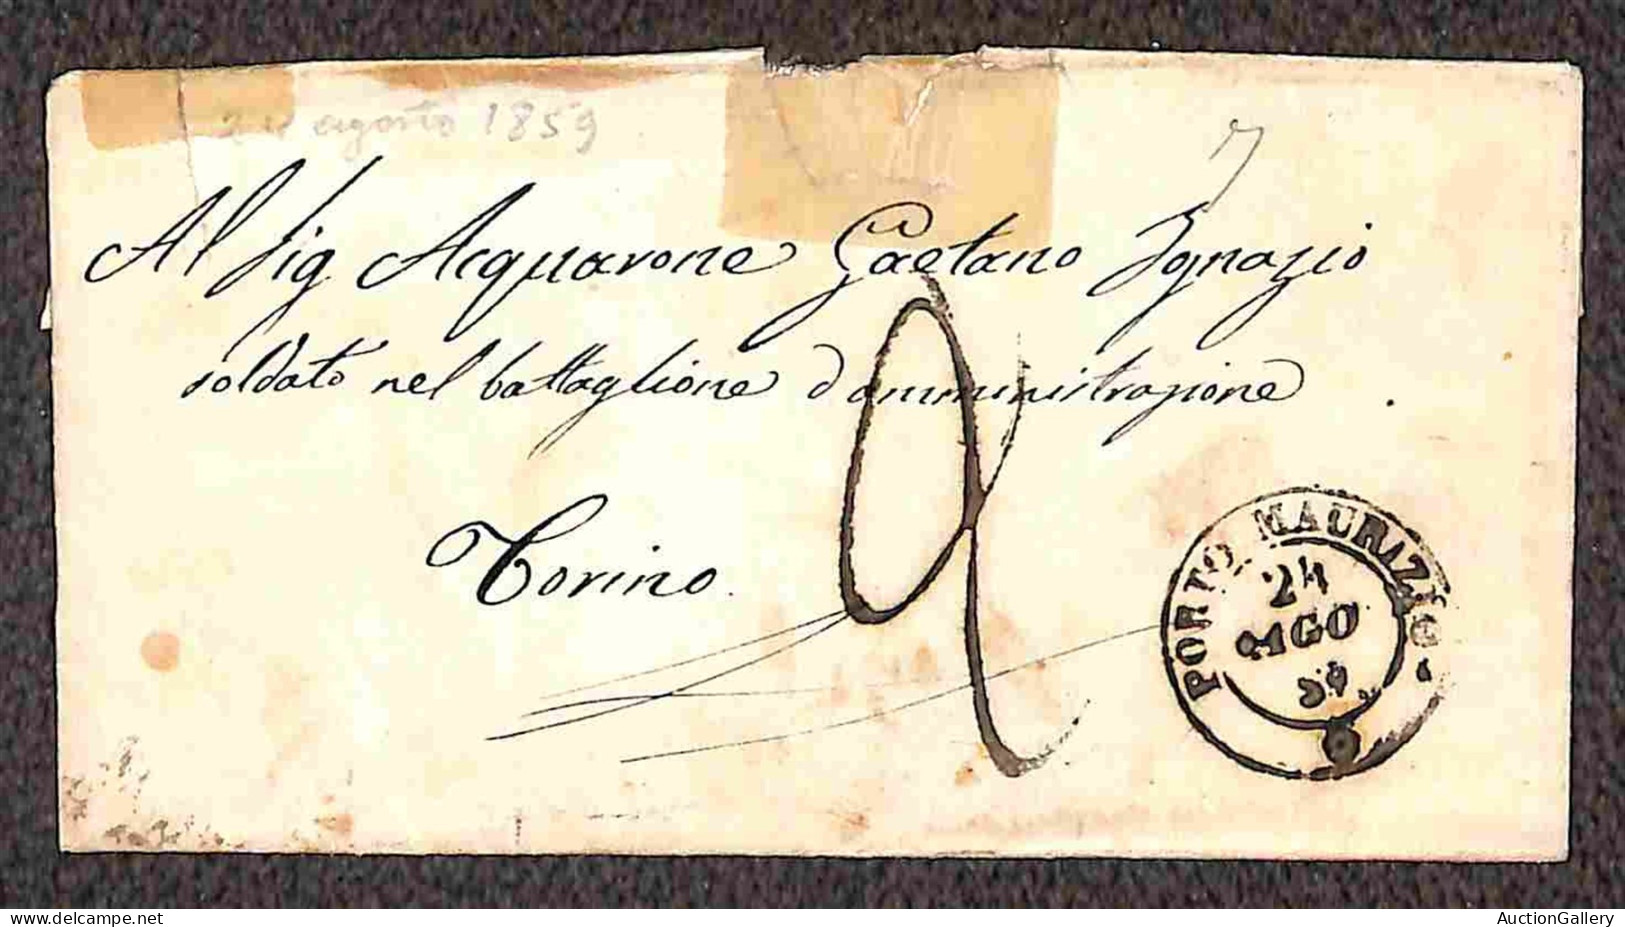 Antichi Stati Italiani - Sardegna - Posta Militare - 1859/1860 - Una bustina + sette lettere da Porto Maurizio indirizza